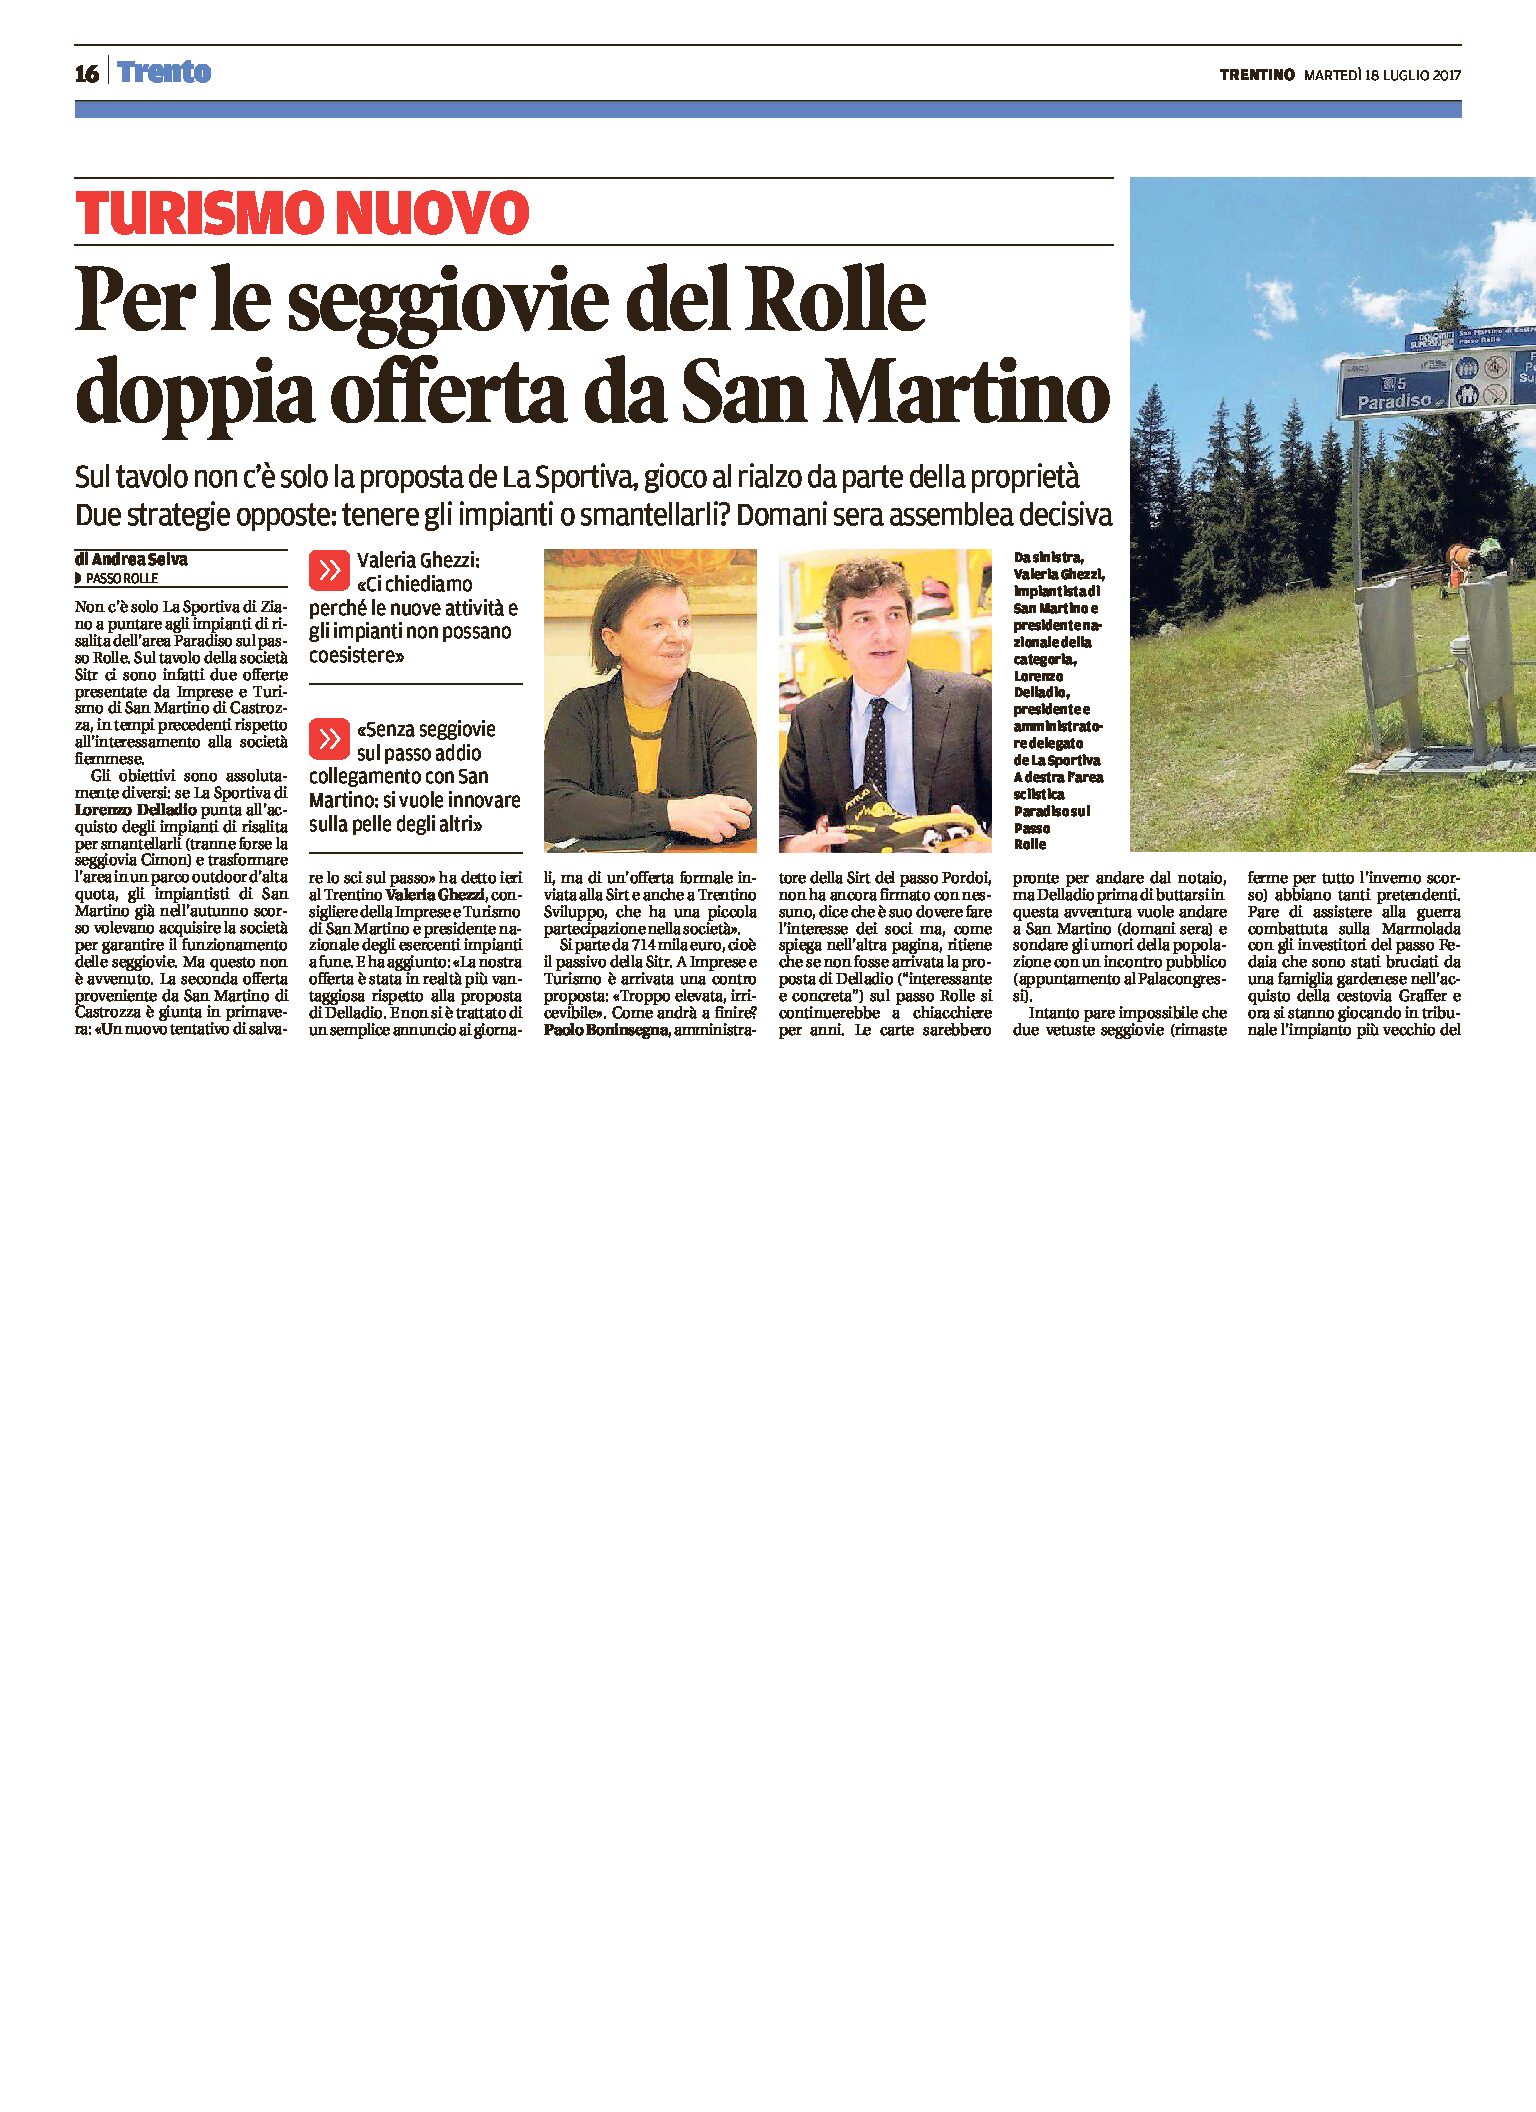 Passo Rolle: per le seggiovie doppia offerta da San Martino